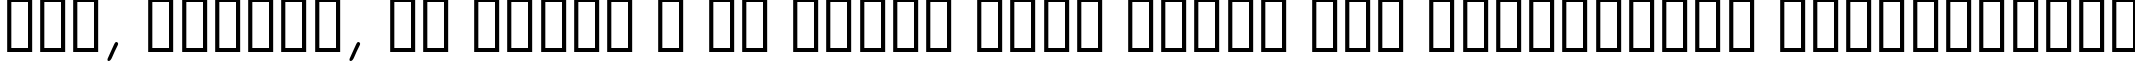 Пример написания шрифтом Sketchpad Note  Italic текста на украинском